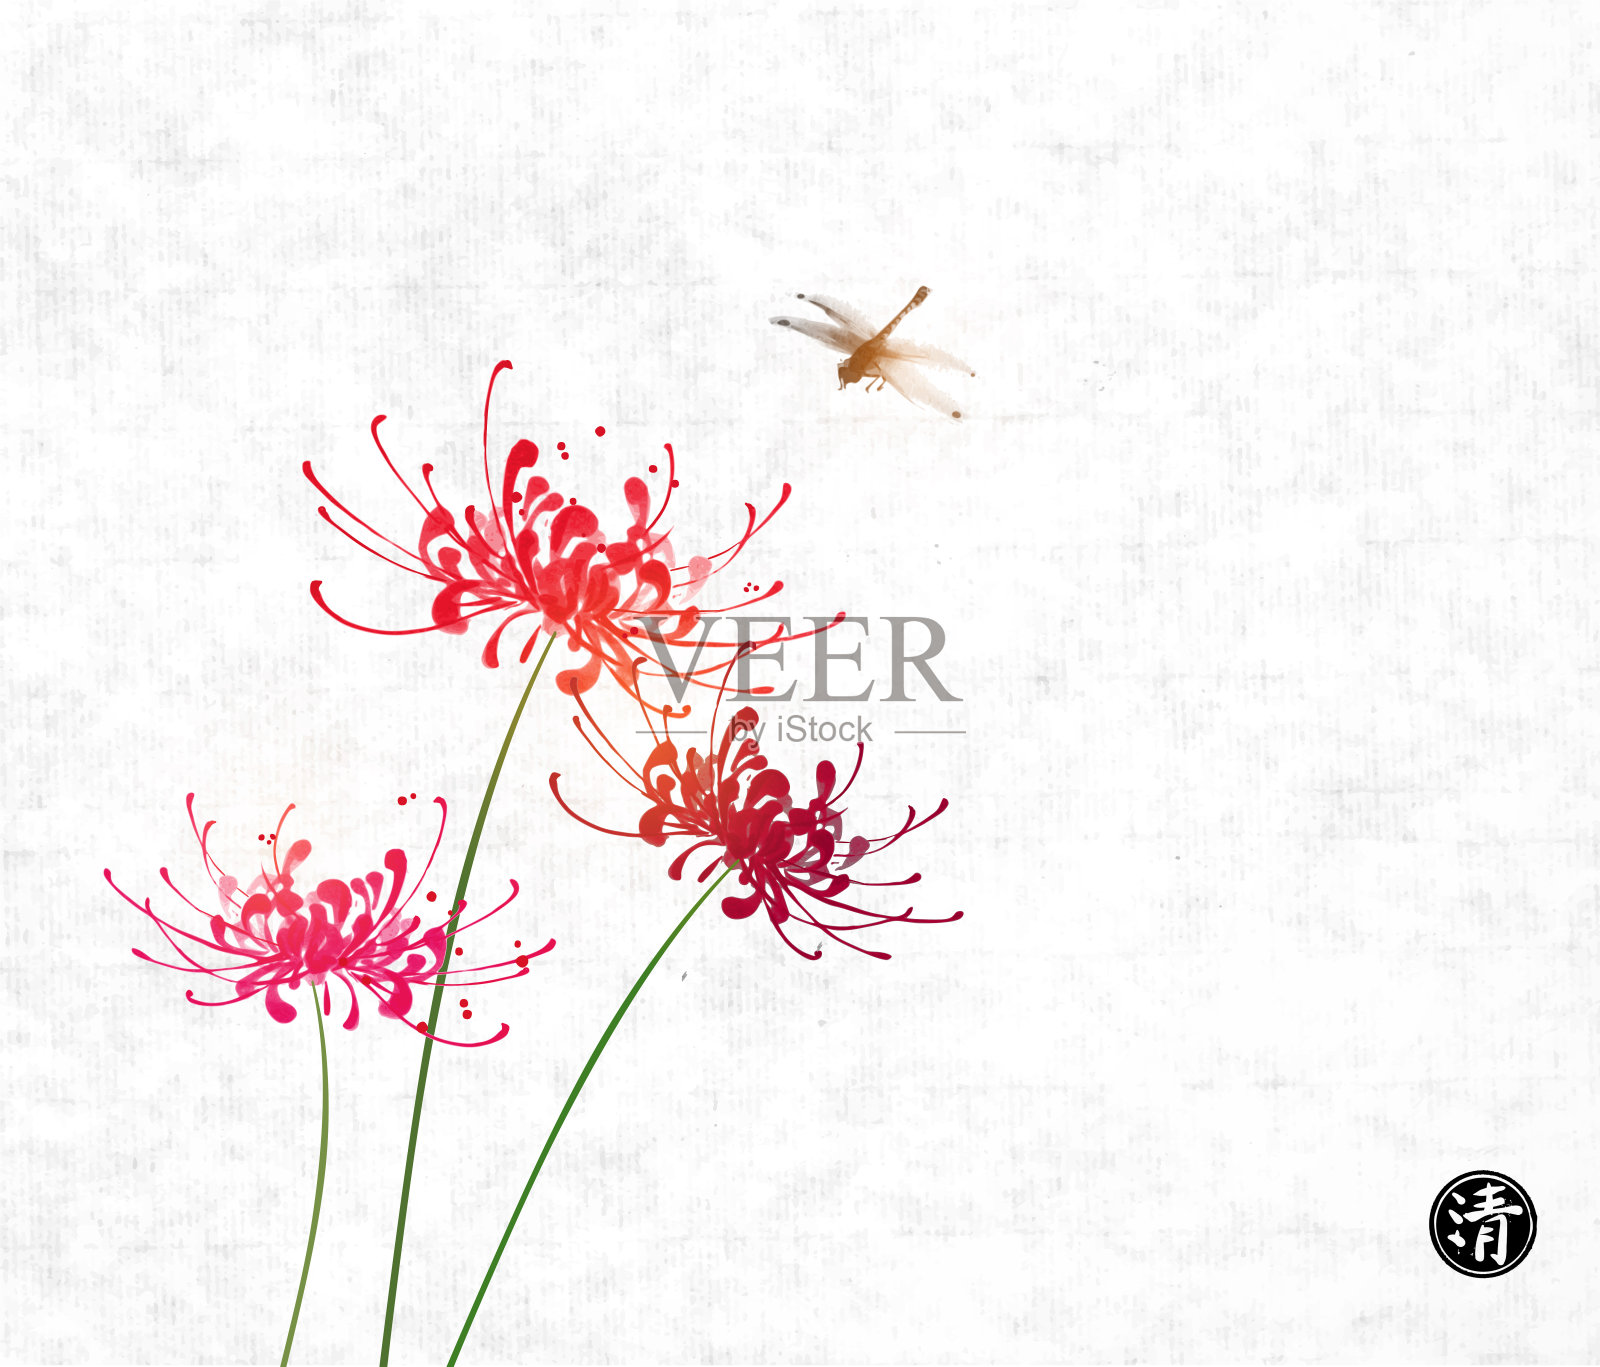 三朵红菊花和蜻蜓在宣纸背景上。象形文字,清晰。传统的东方水墨画粟娥、月仙、围棋。插画图片素材